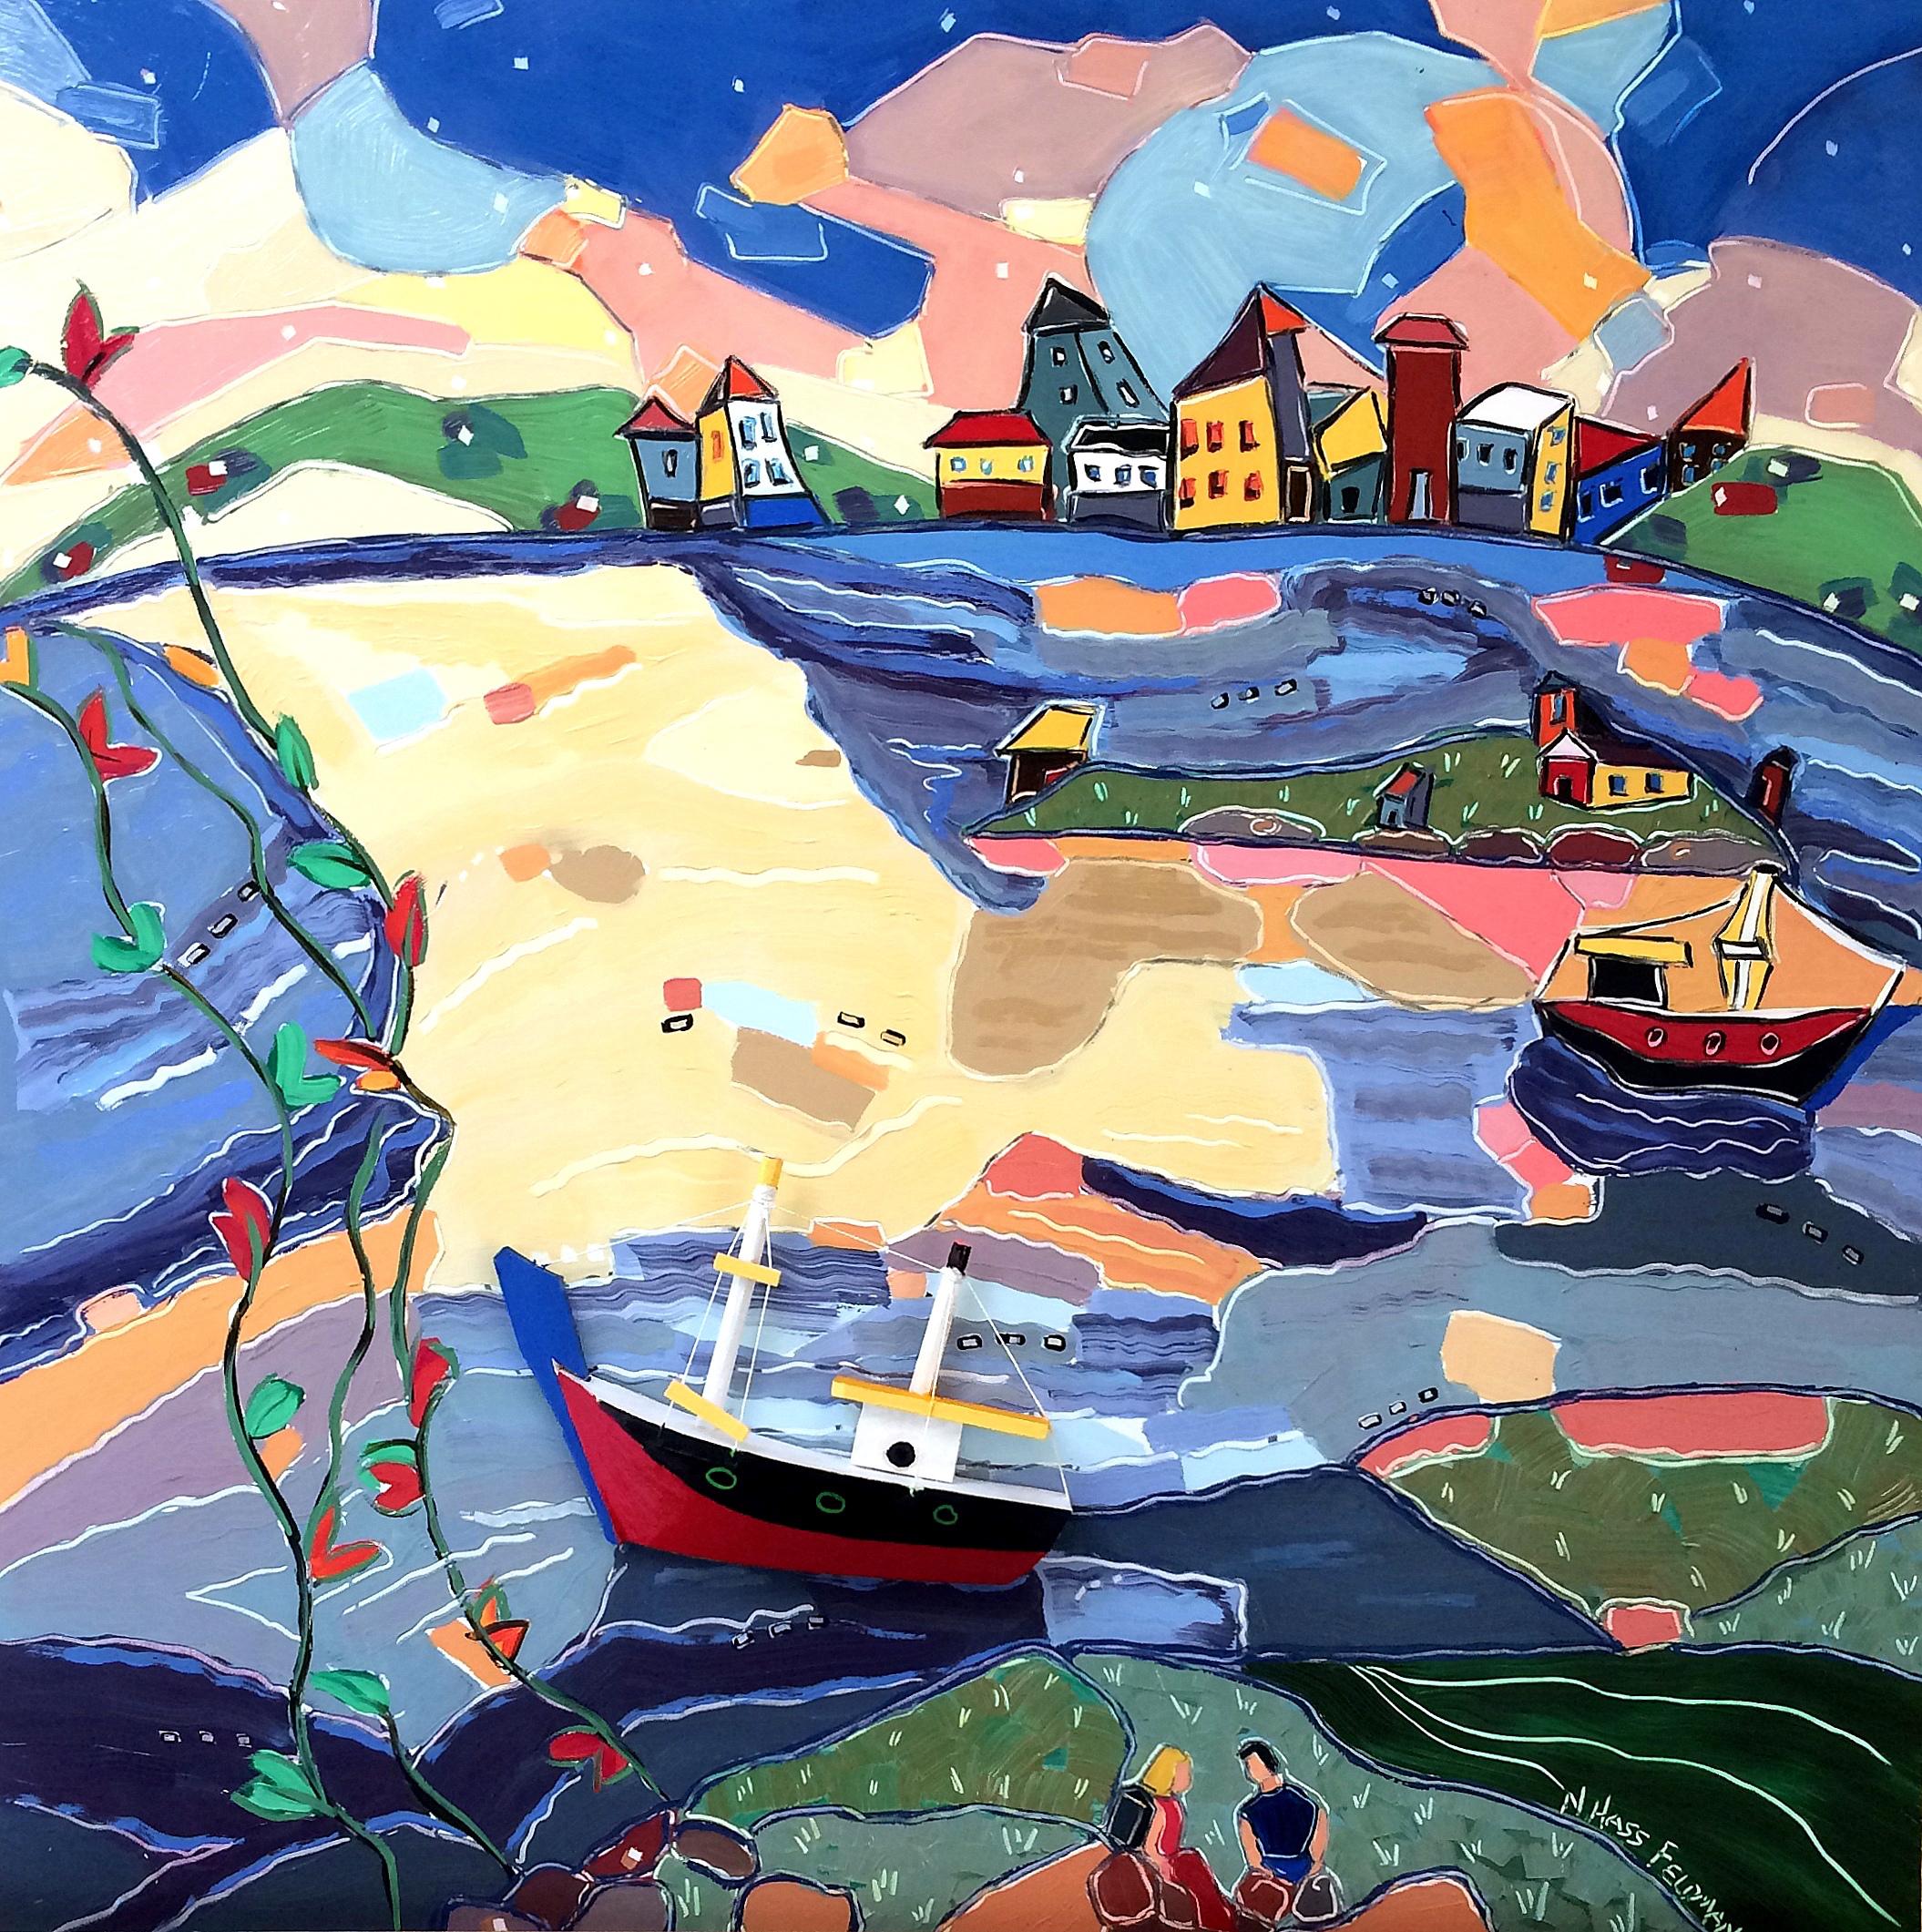 « Picnic in Valparaiso », paysage, ville, Chili, bateaux, bleu, rouge, peinture à l'huile - Painting de Nan Hass Feldman